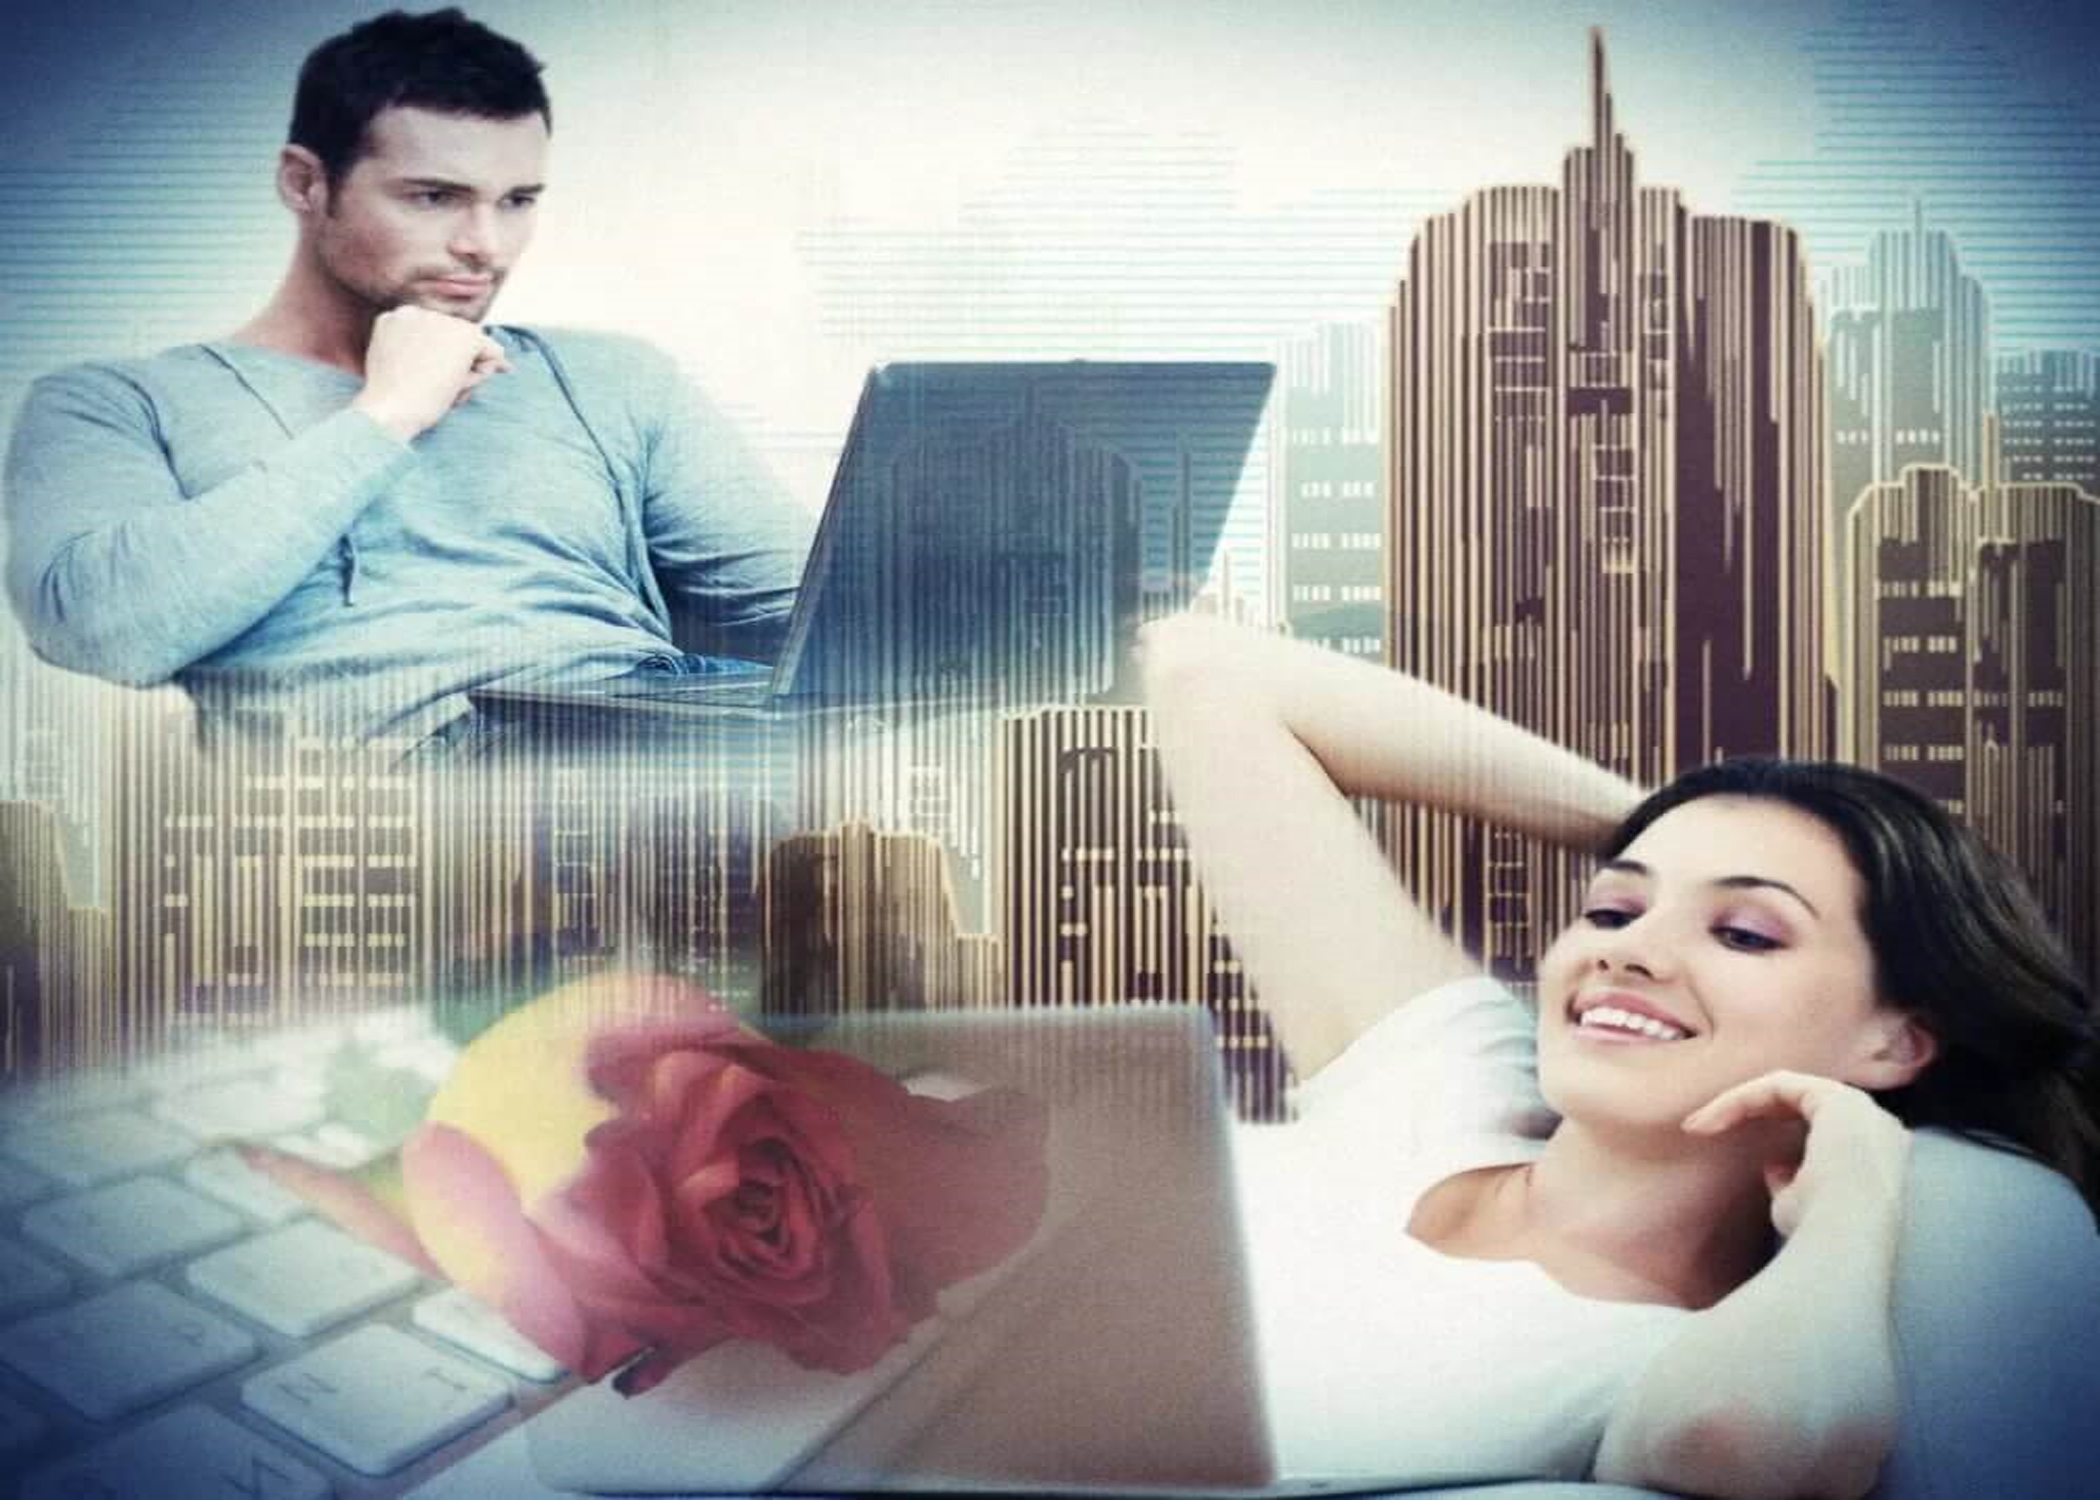 Сайт для просмотра с друзьями на расстоянии. Мужчина и женщина в интернете. Влюбленные на расстоянии. Виртуальная любовь. Пара на расстоянии.